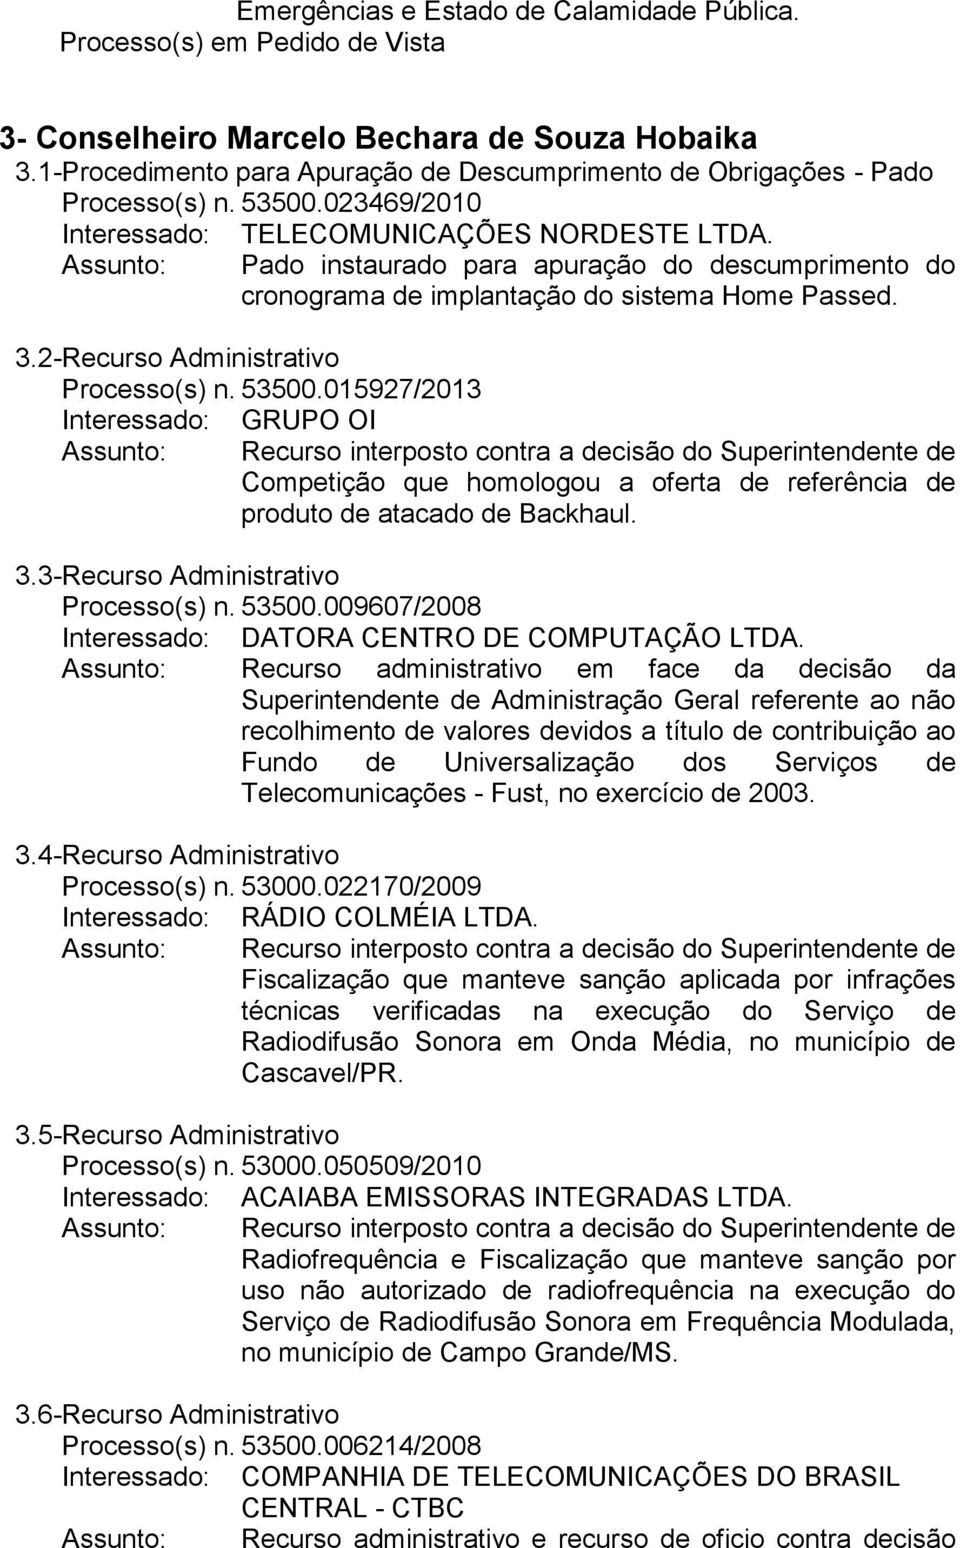 2- Recurso Administrativo Processo(s) n. 53500.015927/2013 Interessado: GRUPO OI Competição que homologou a oferta de referência de produto de atacado de Backhaul. 3.